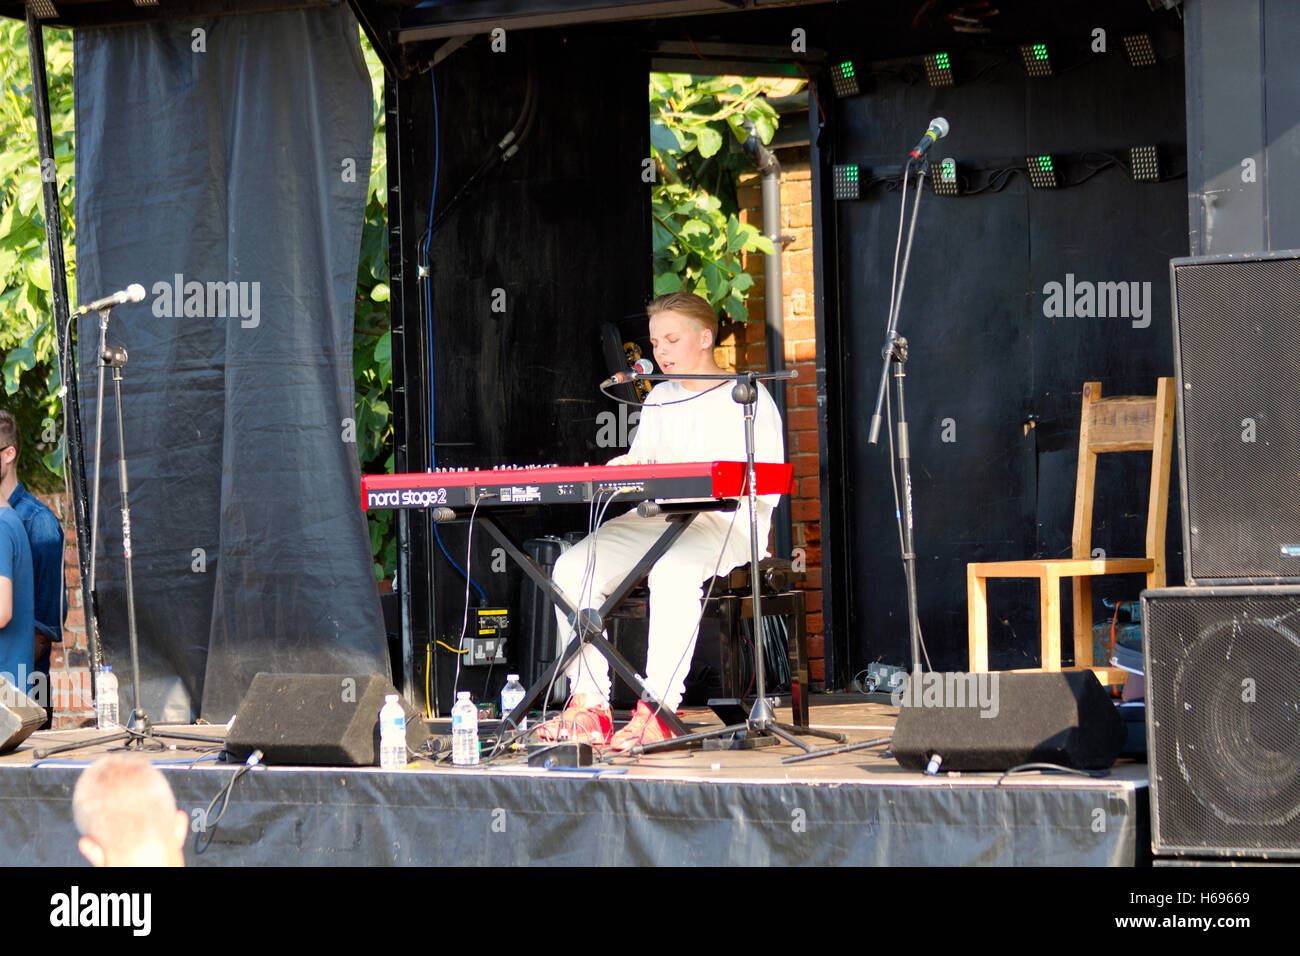 Aaron Floyd, erklingt in der jährlichen Musik-Festival von Würstchen und Bier, Jimmys Farm, Ipswich, Suffolk, UK, 2016 Stockfoto